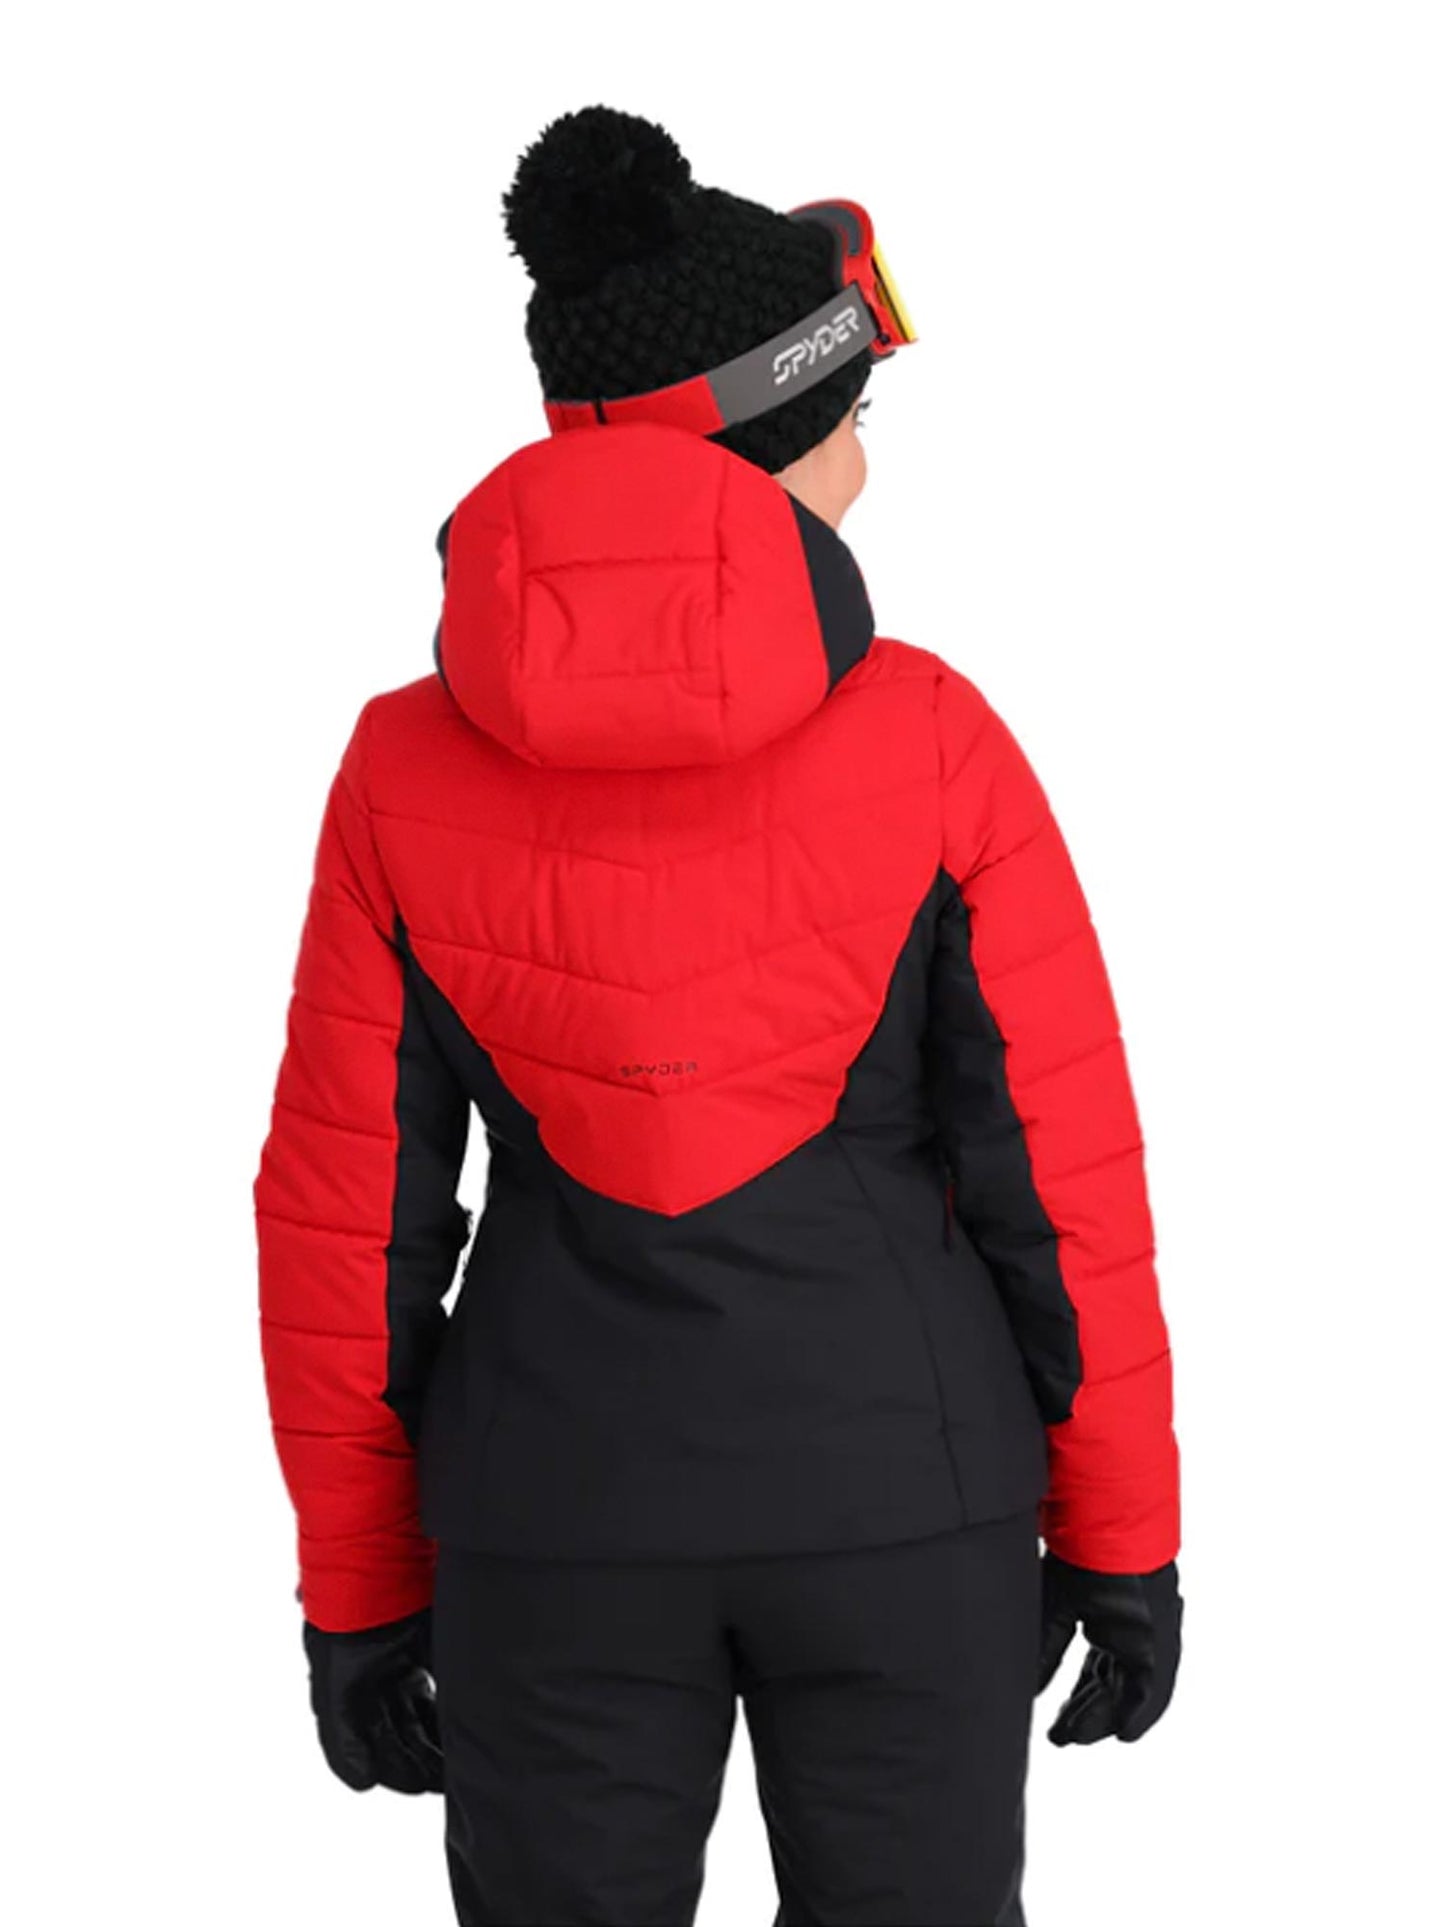 Black and red Spyder Haven ski jacket